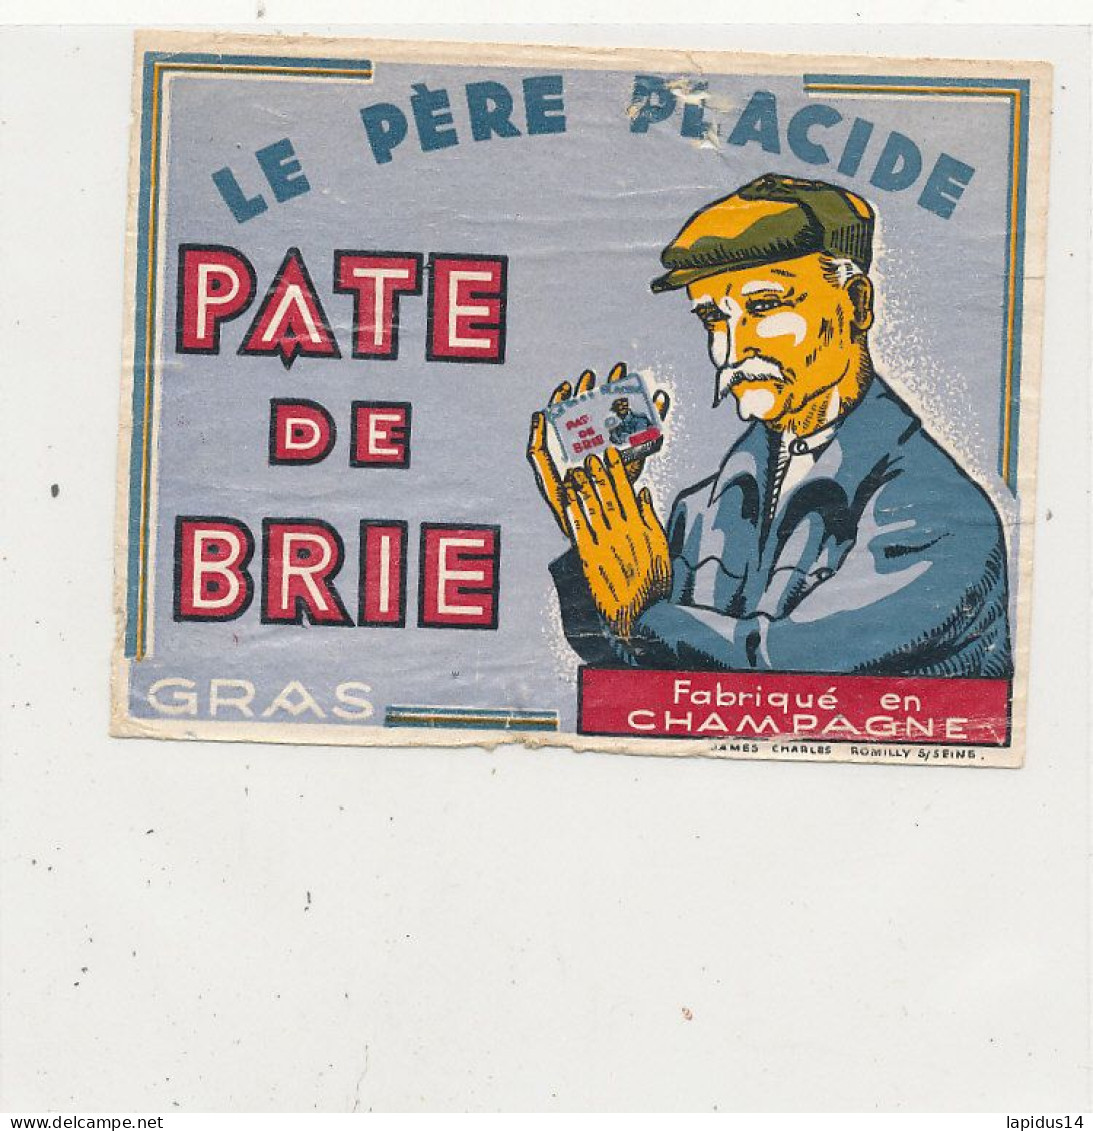 GG 445  / ETIQUETTE FROMAGE  PATE  DE BRIE -LE PERE PLACIDE  FABRIQUE EN CHAMPAGNE - Käse